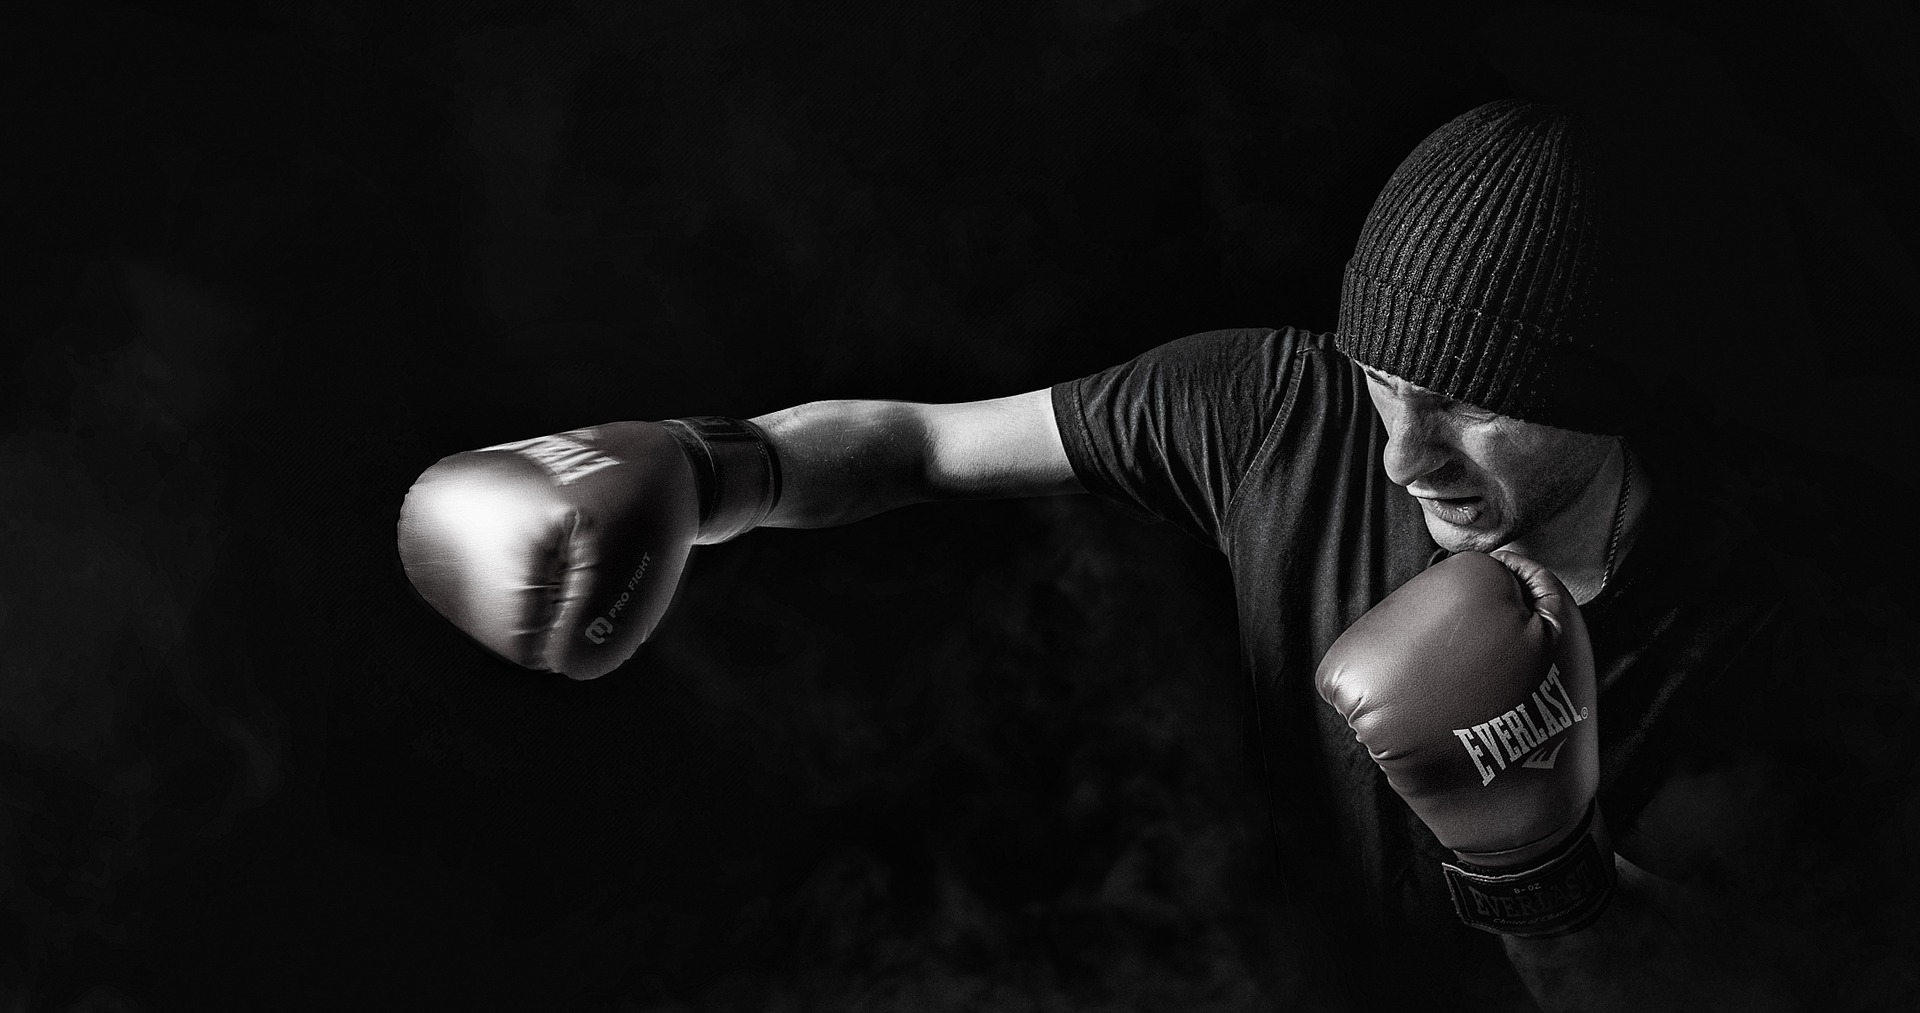 Manfaat Boxing Yoga, Olahraga dari Kombinasi Tinju dan Yoga